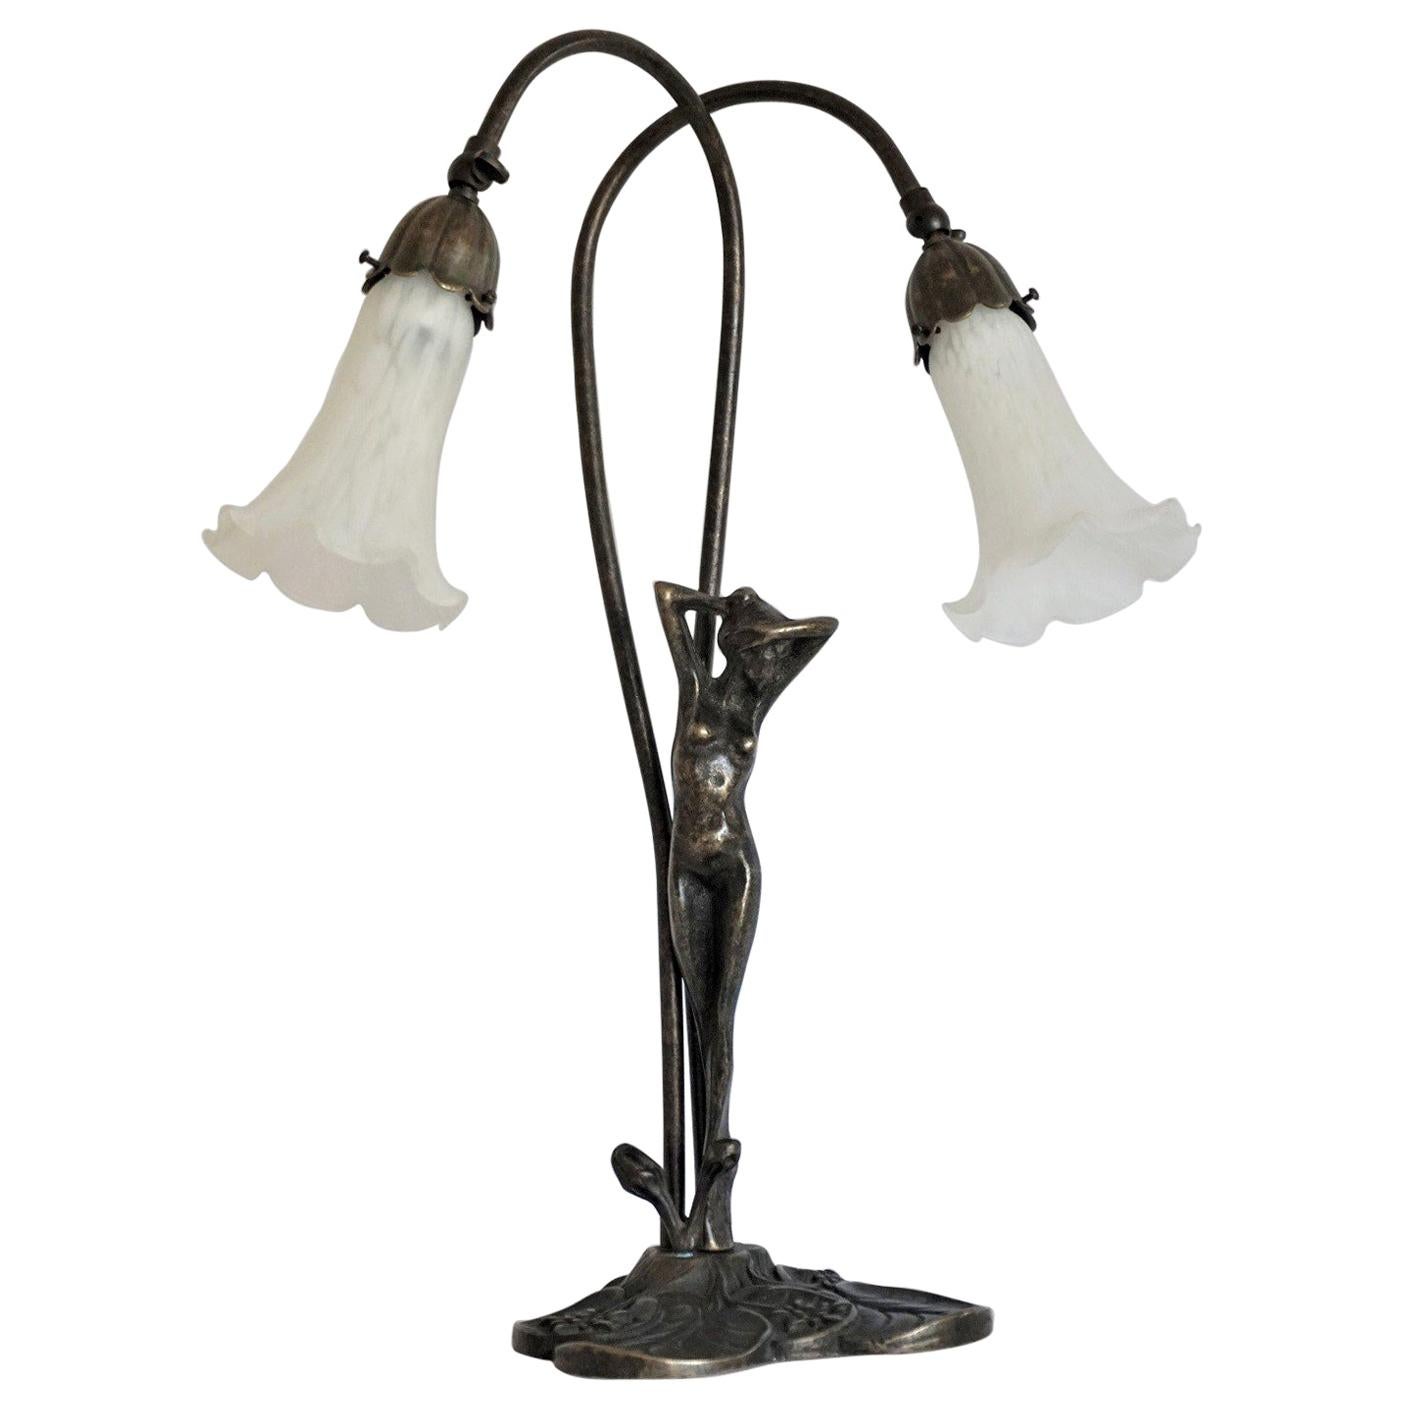 Lampe de table Art Déco à double bras en bronze avec des abat-jour en verre d'art blanc, France, vers 1930-1939. Les deux bras réglables permettent de varier les réglages et la largeur.
Cette magnifique lampe de table est en très bon état, avec une